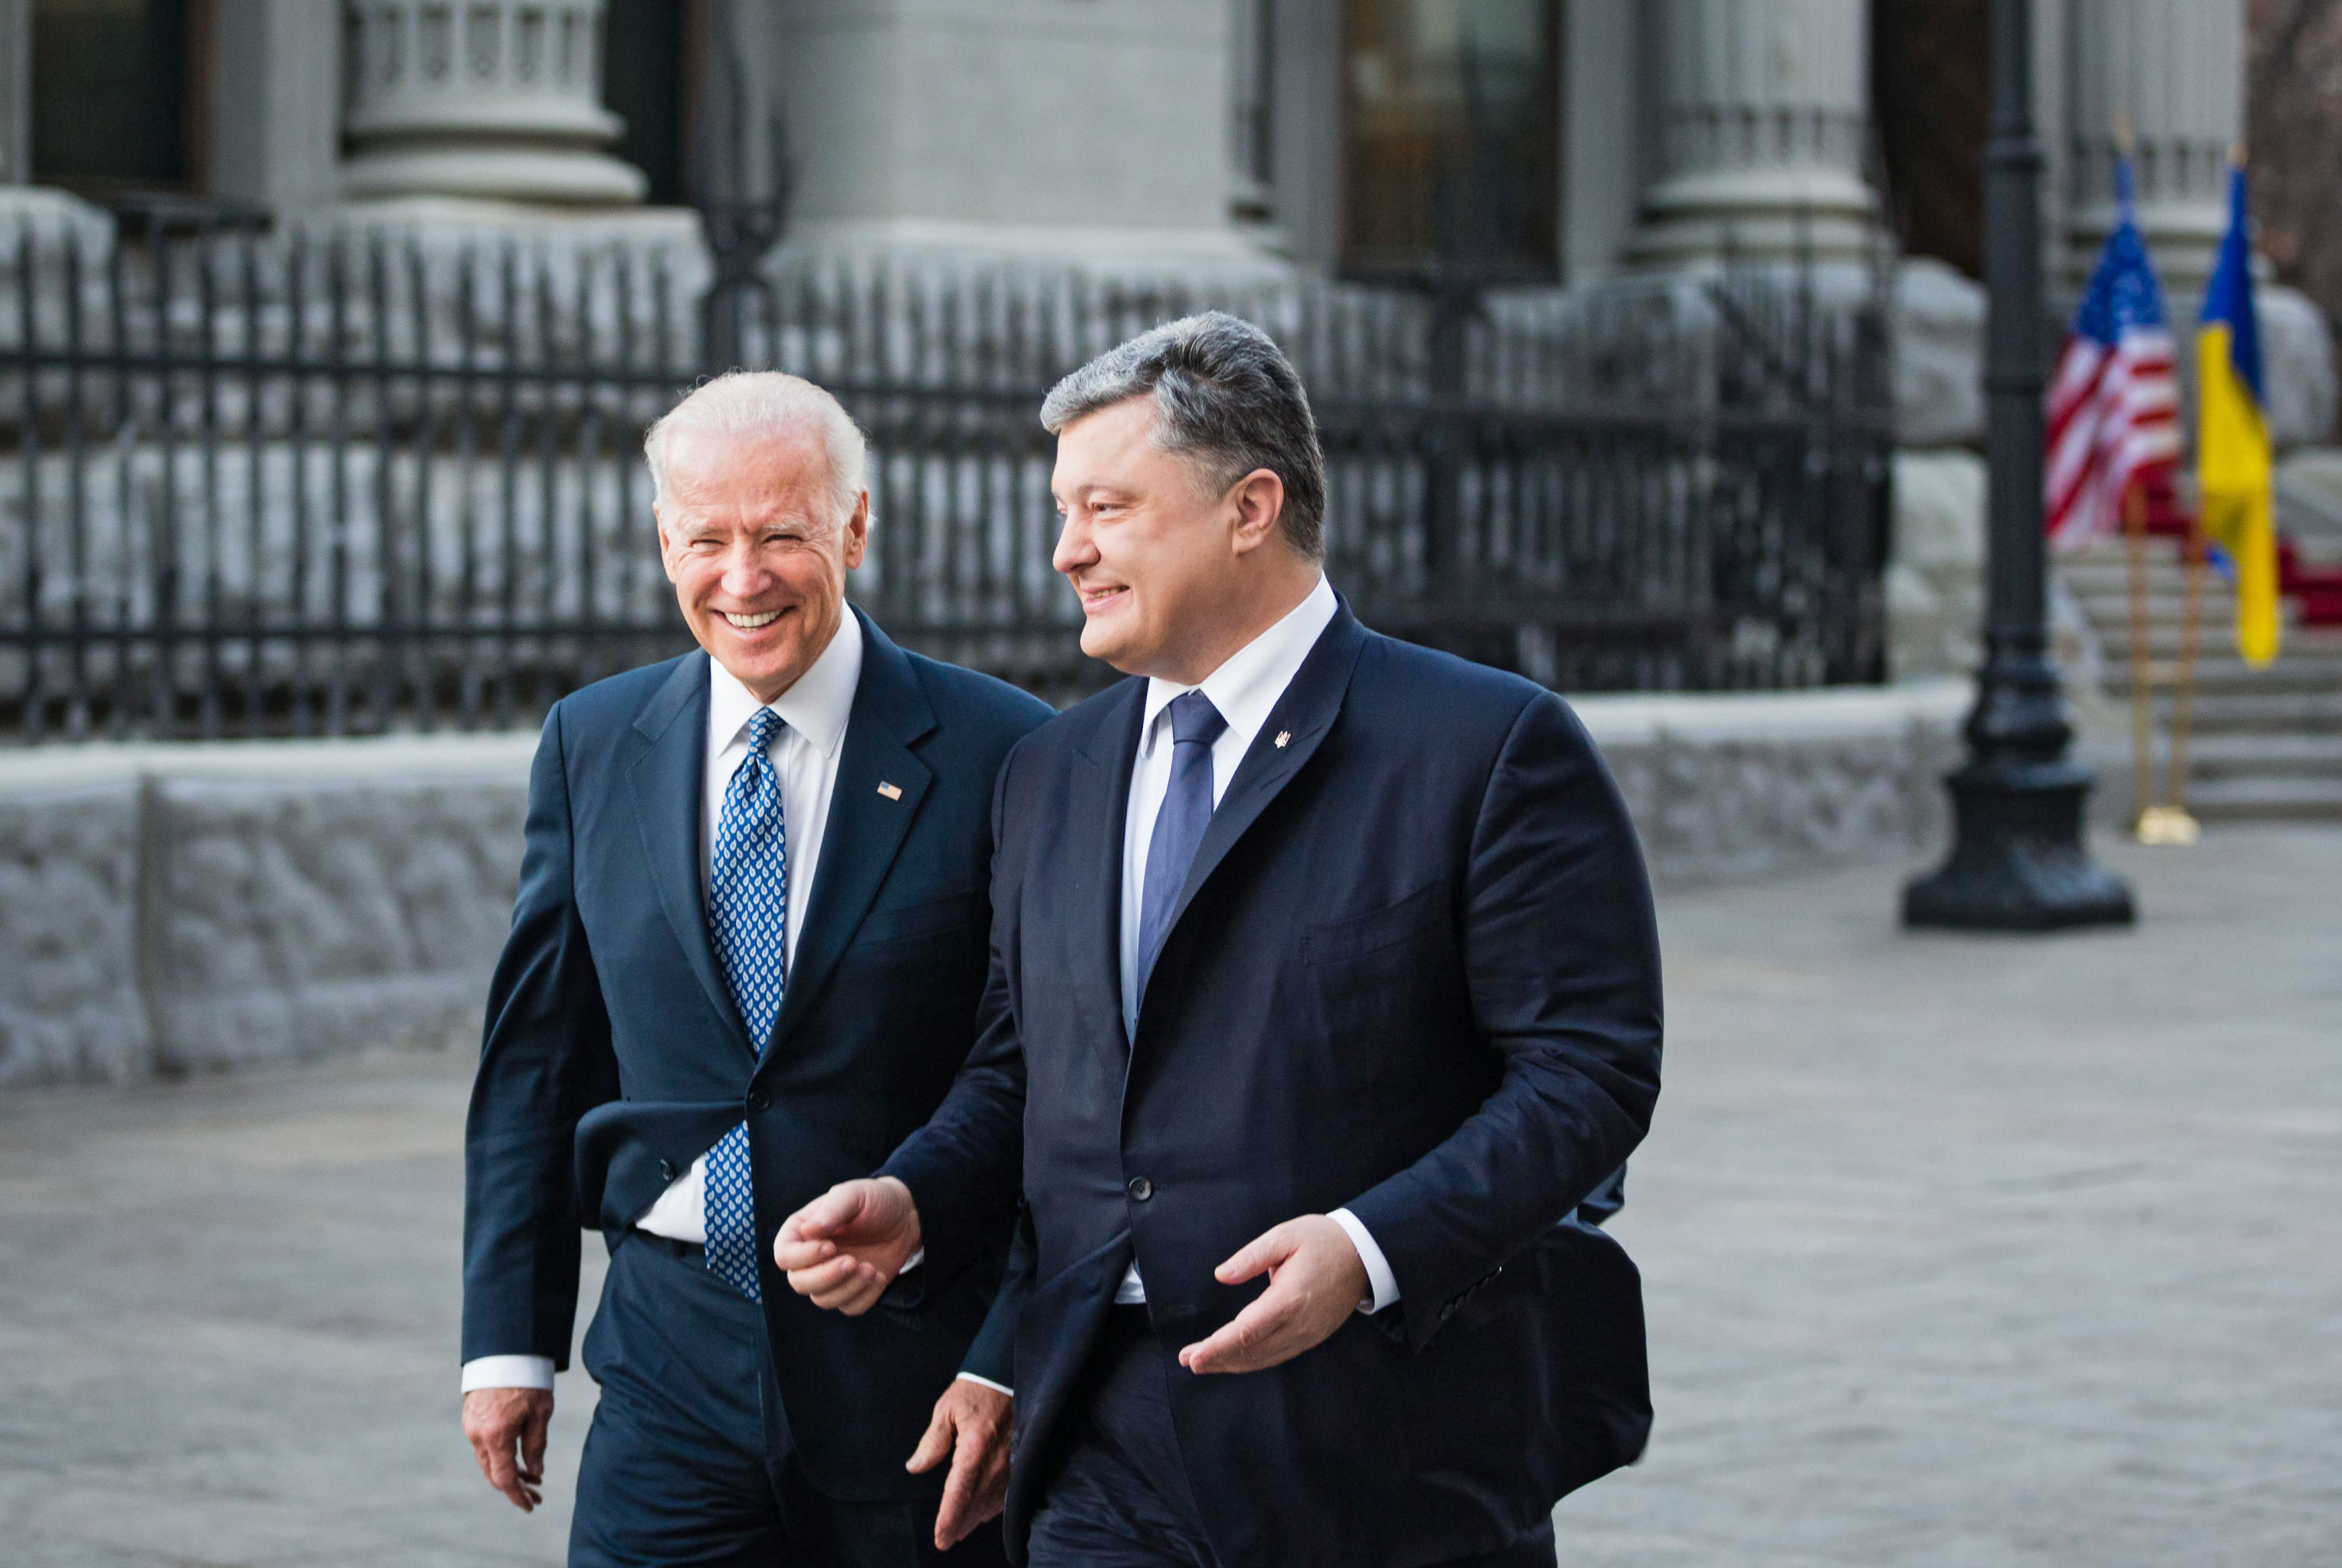 Вице-президент США Джо Байден (слева) и президент Украины Петр Порошенко во время встречи в Киеве, 7 декабря 2015